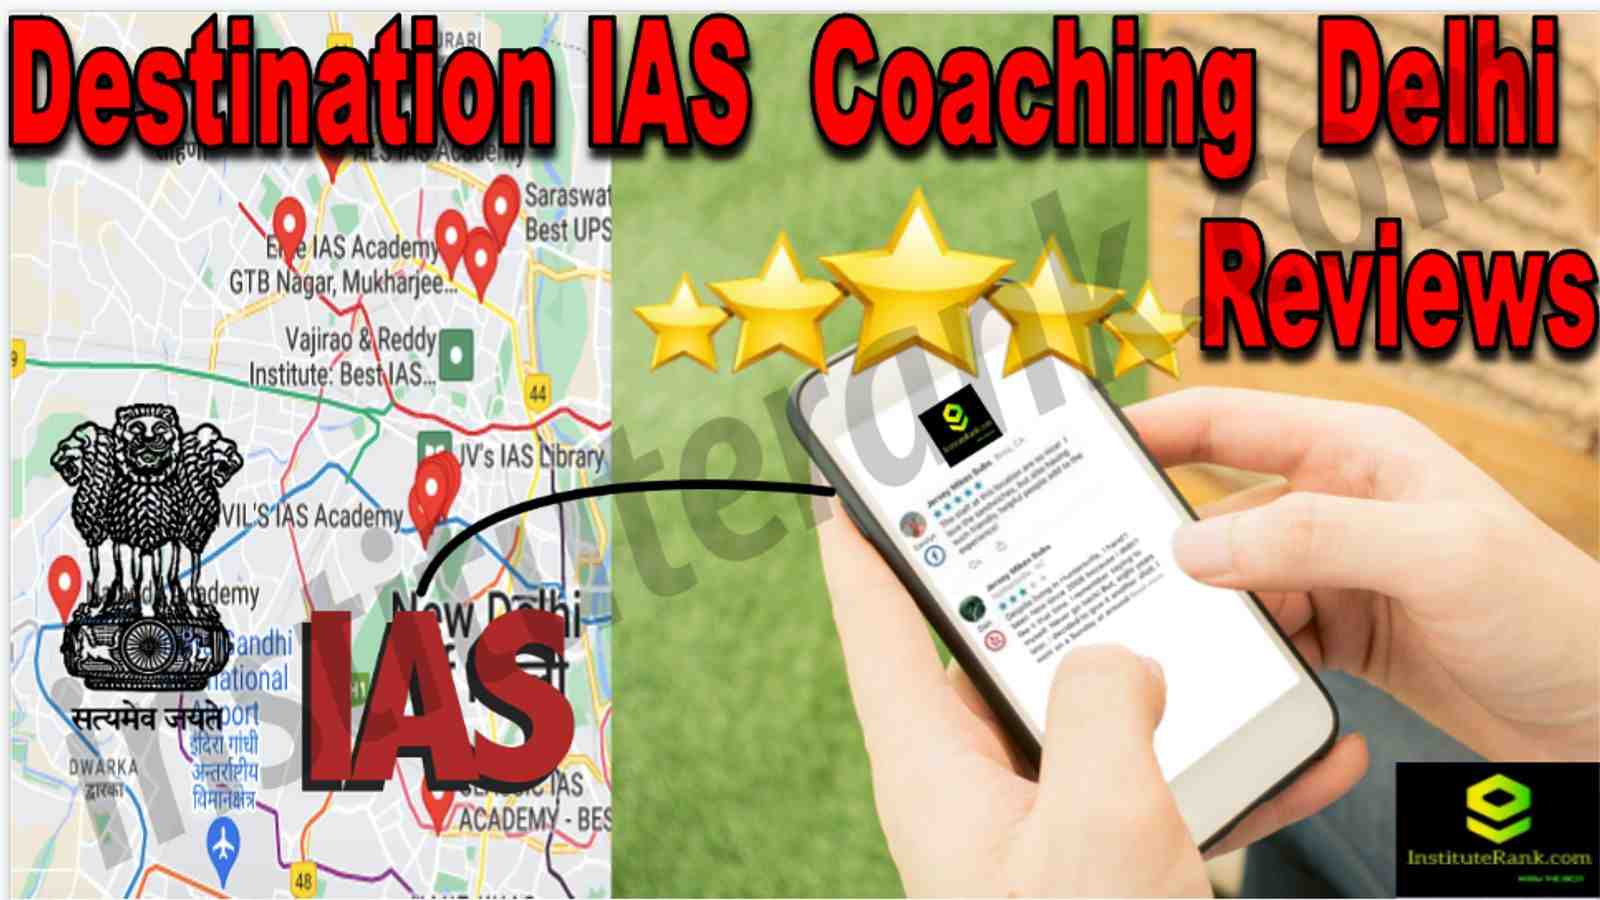 Destination IAS Coaching Delhi Reviews